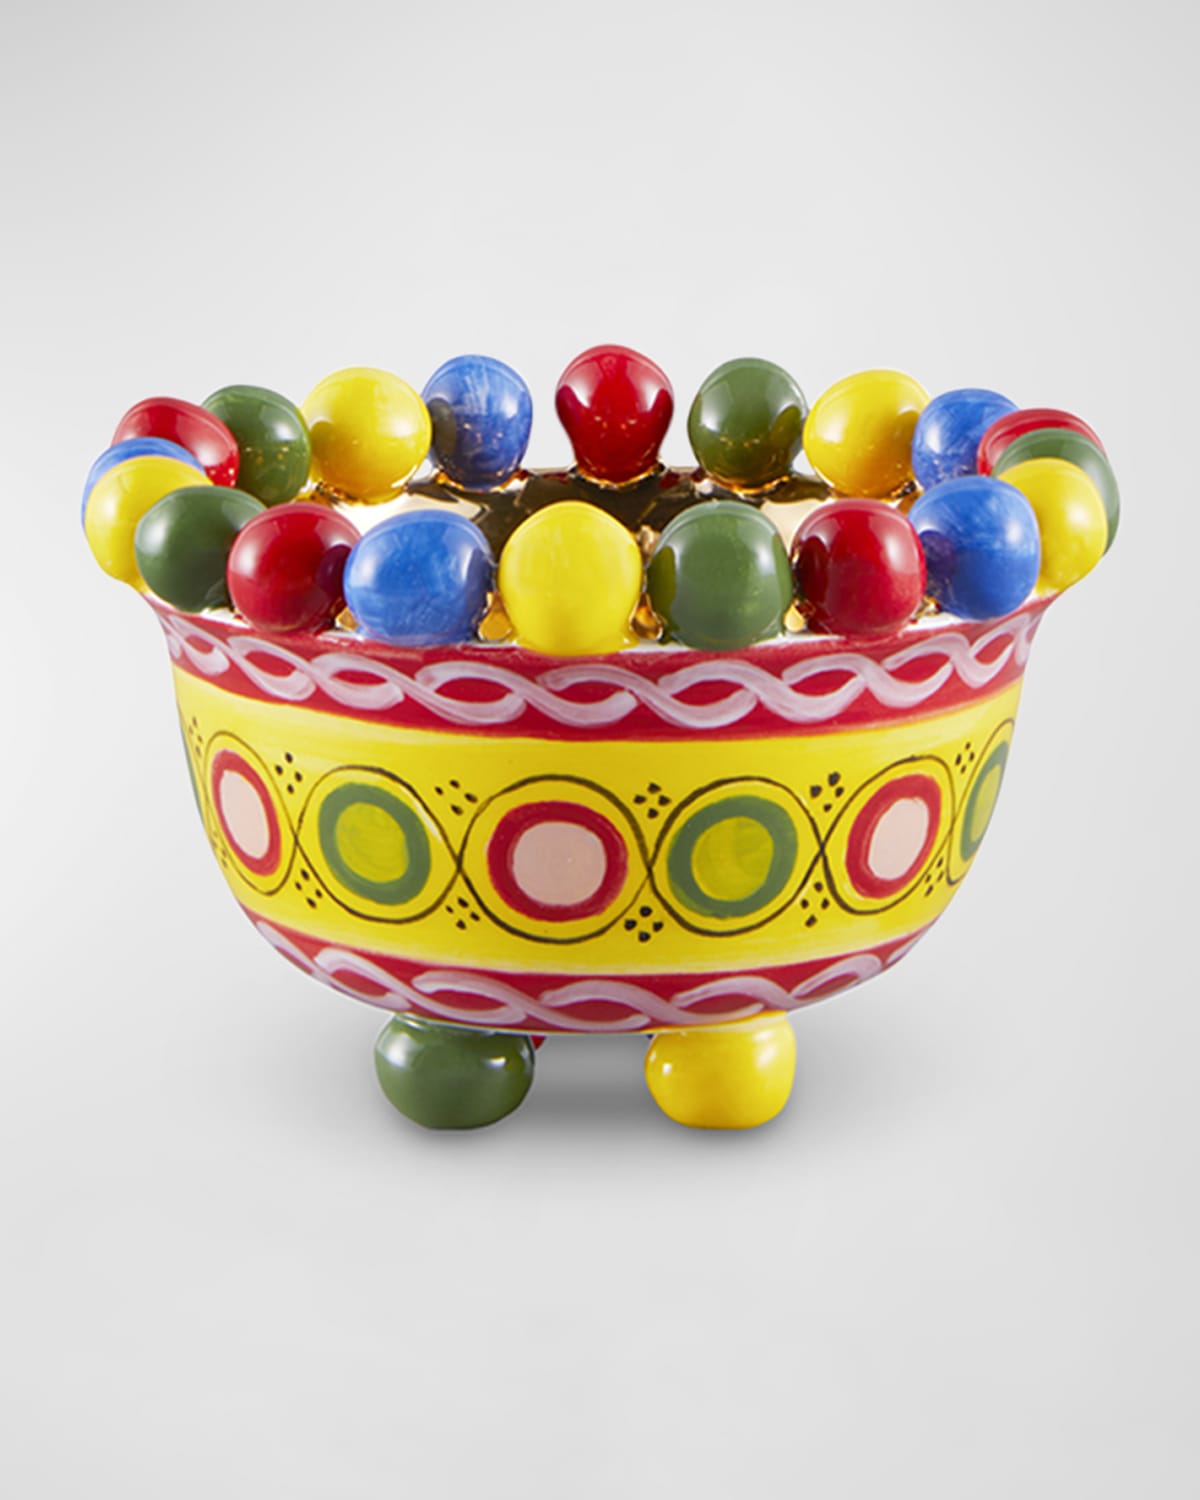 Carretto Small Bowl With Colored Small Balls, 4.3"